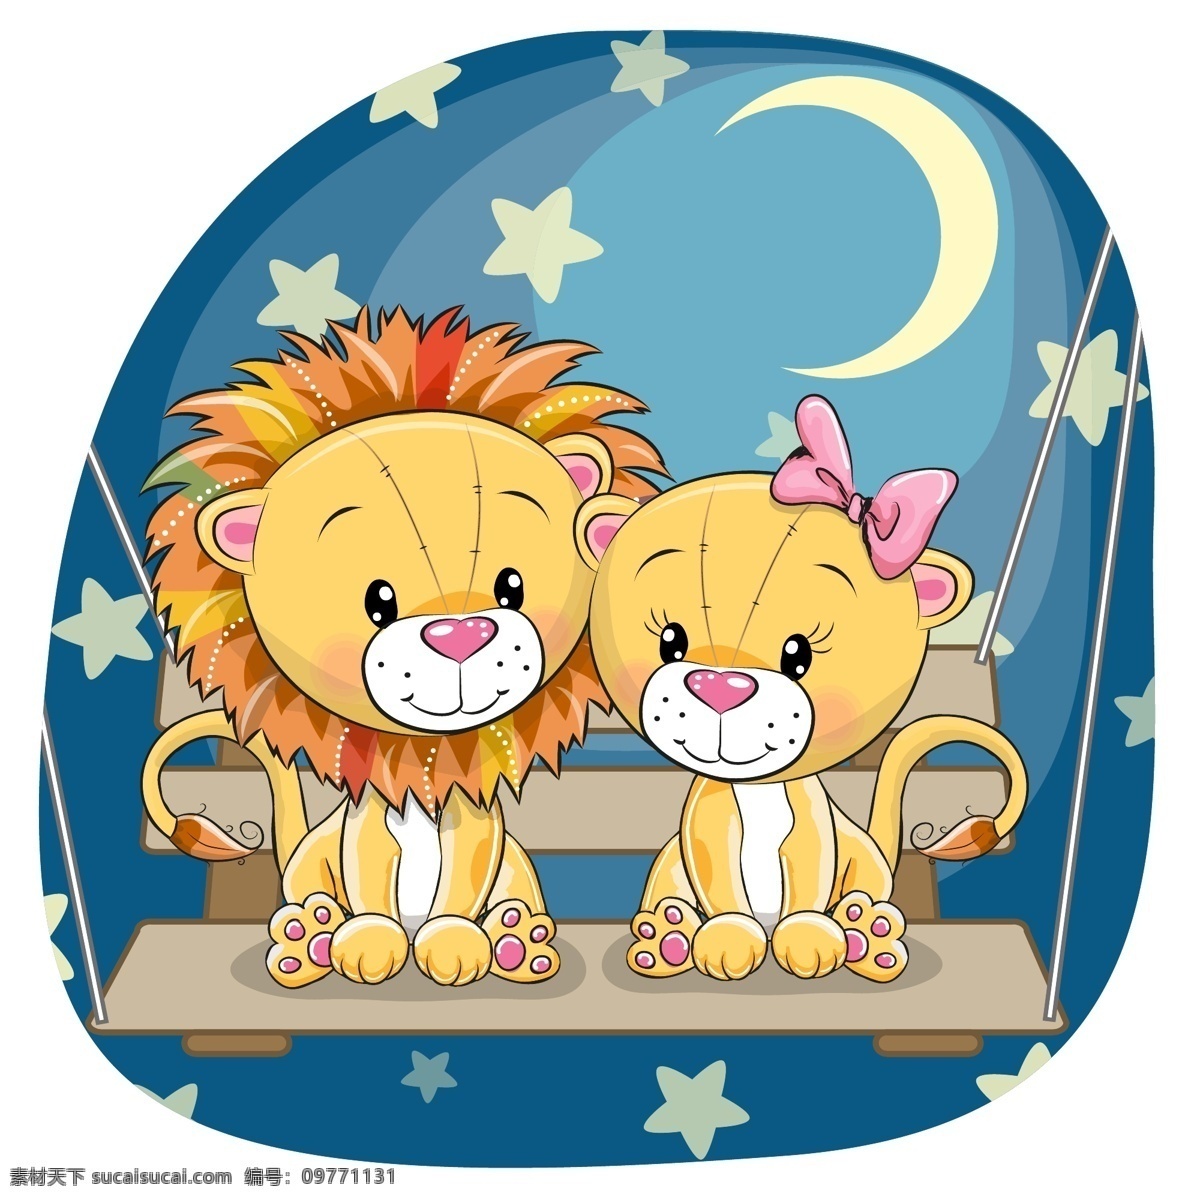 卡通狮子 狮子 卡通 可爱 动物 幼儿园素材 卡通动物 卡通设计